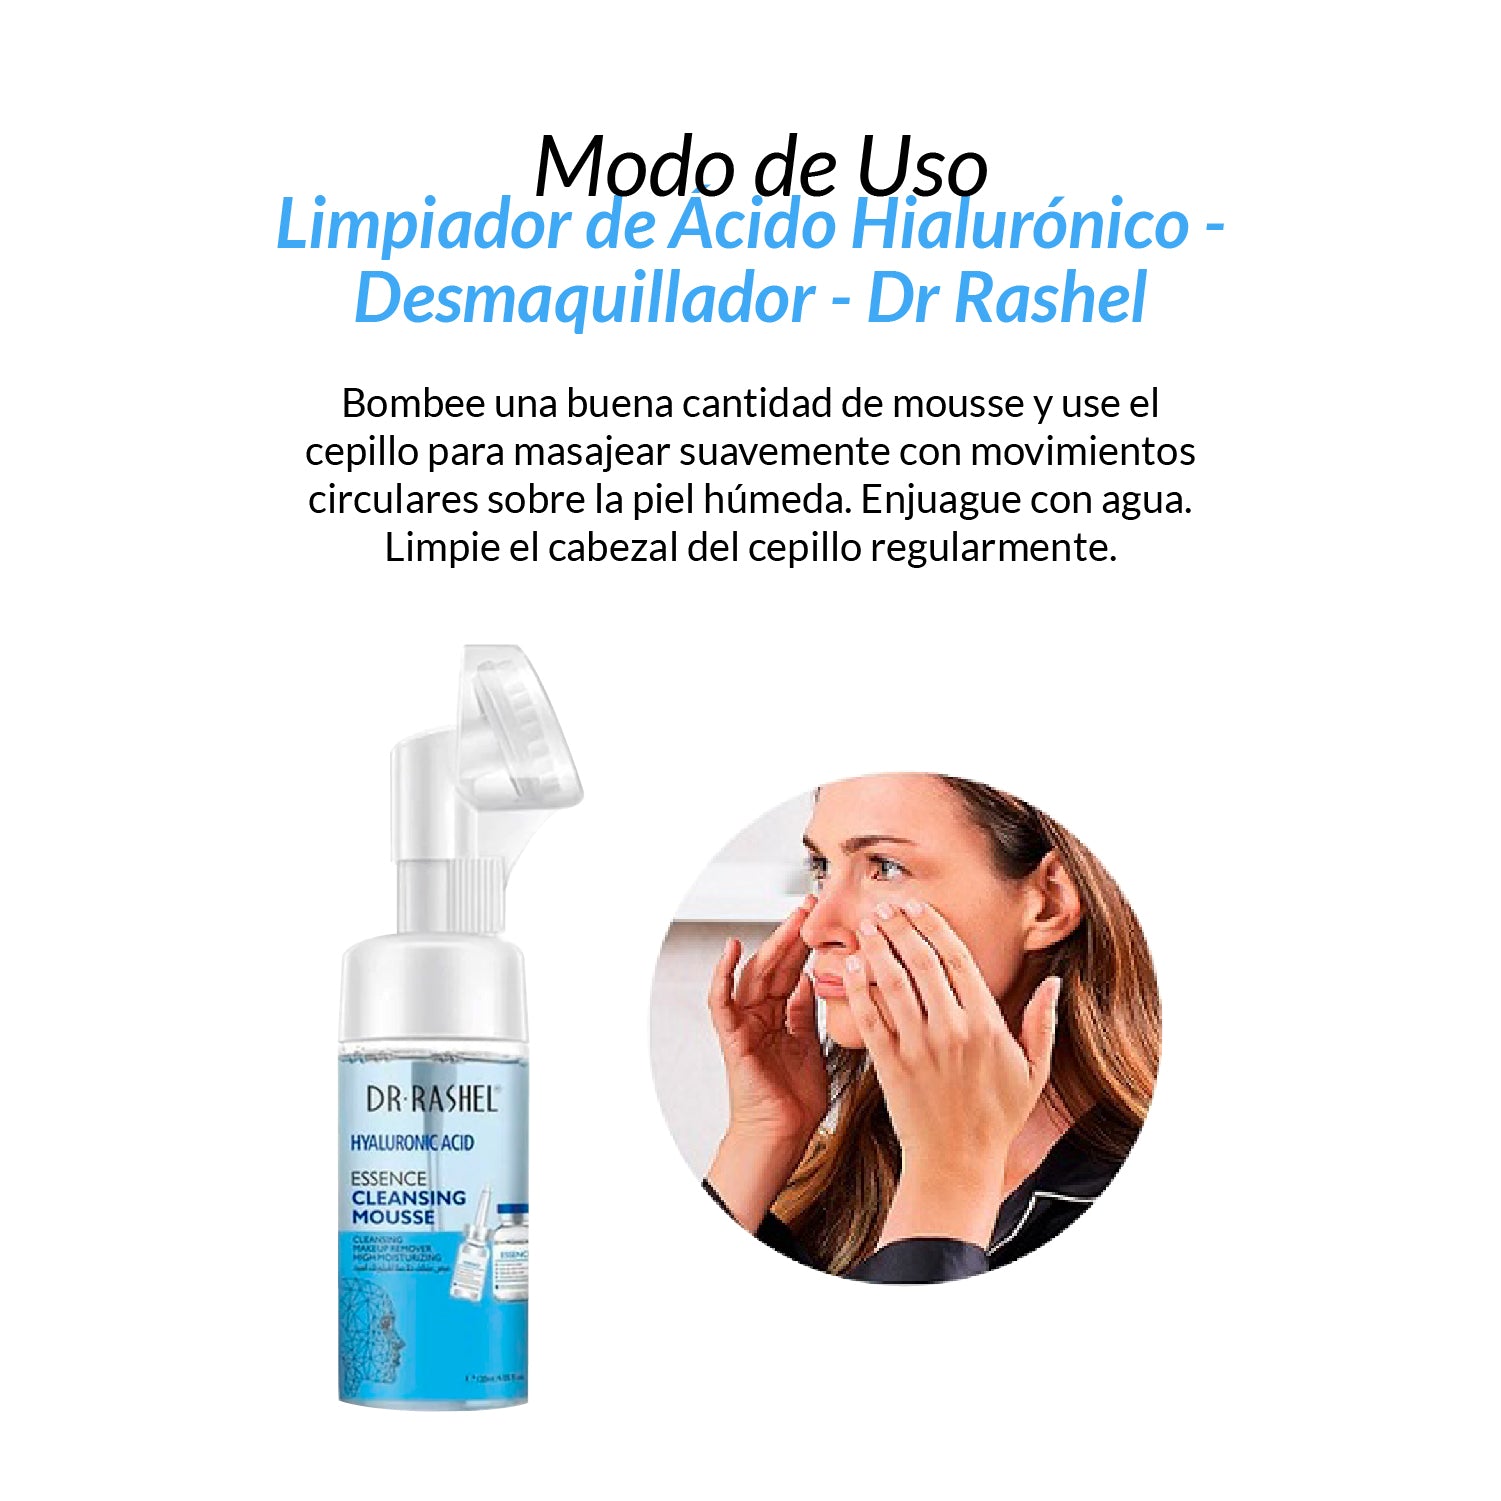 Dr Rashel - Limpiador de Esencia Mousse Acido Hialurónico - Desmaquillador